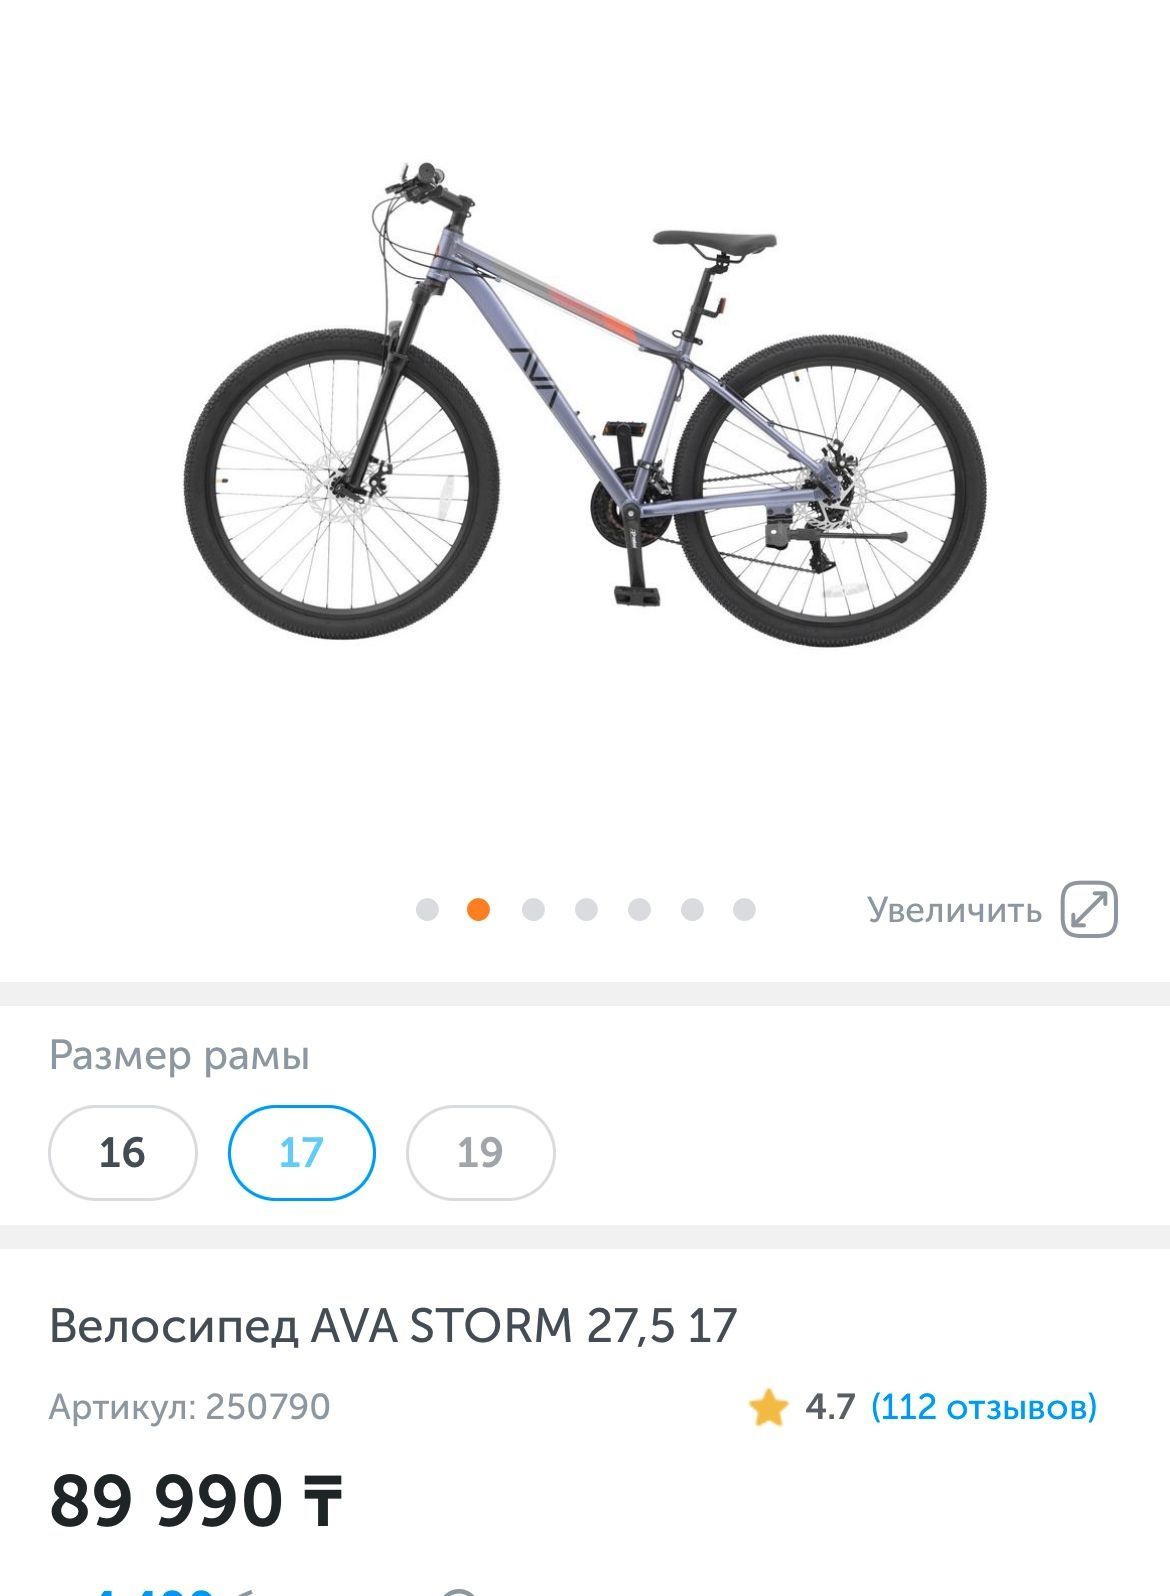 Продам новый велосипед(в упаковке,не собран)Надежный горный велосипед